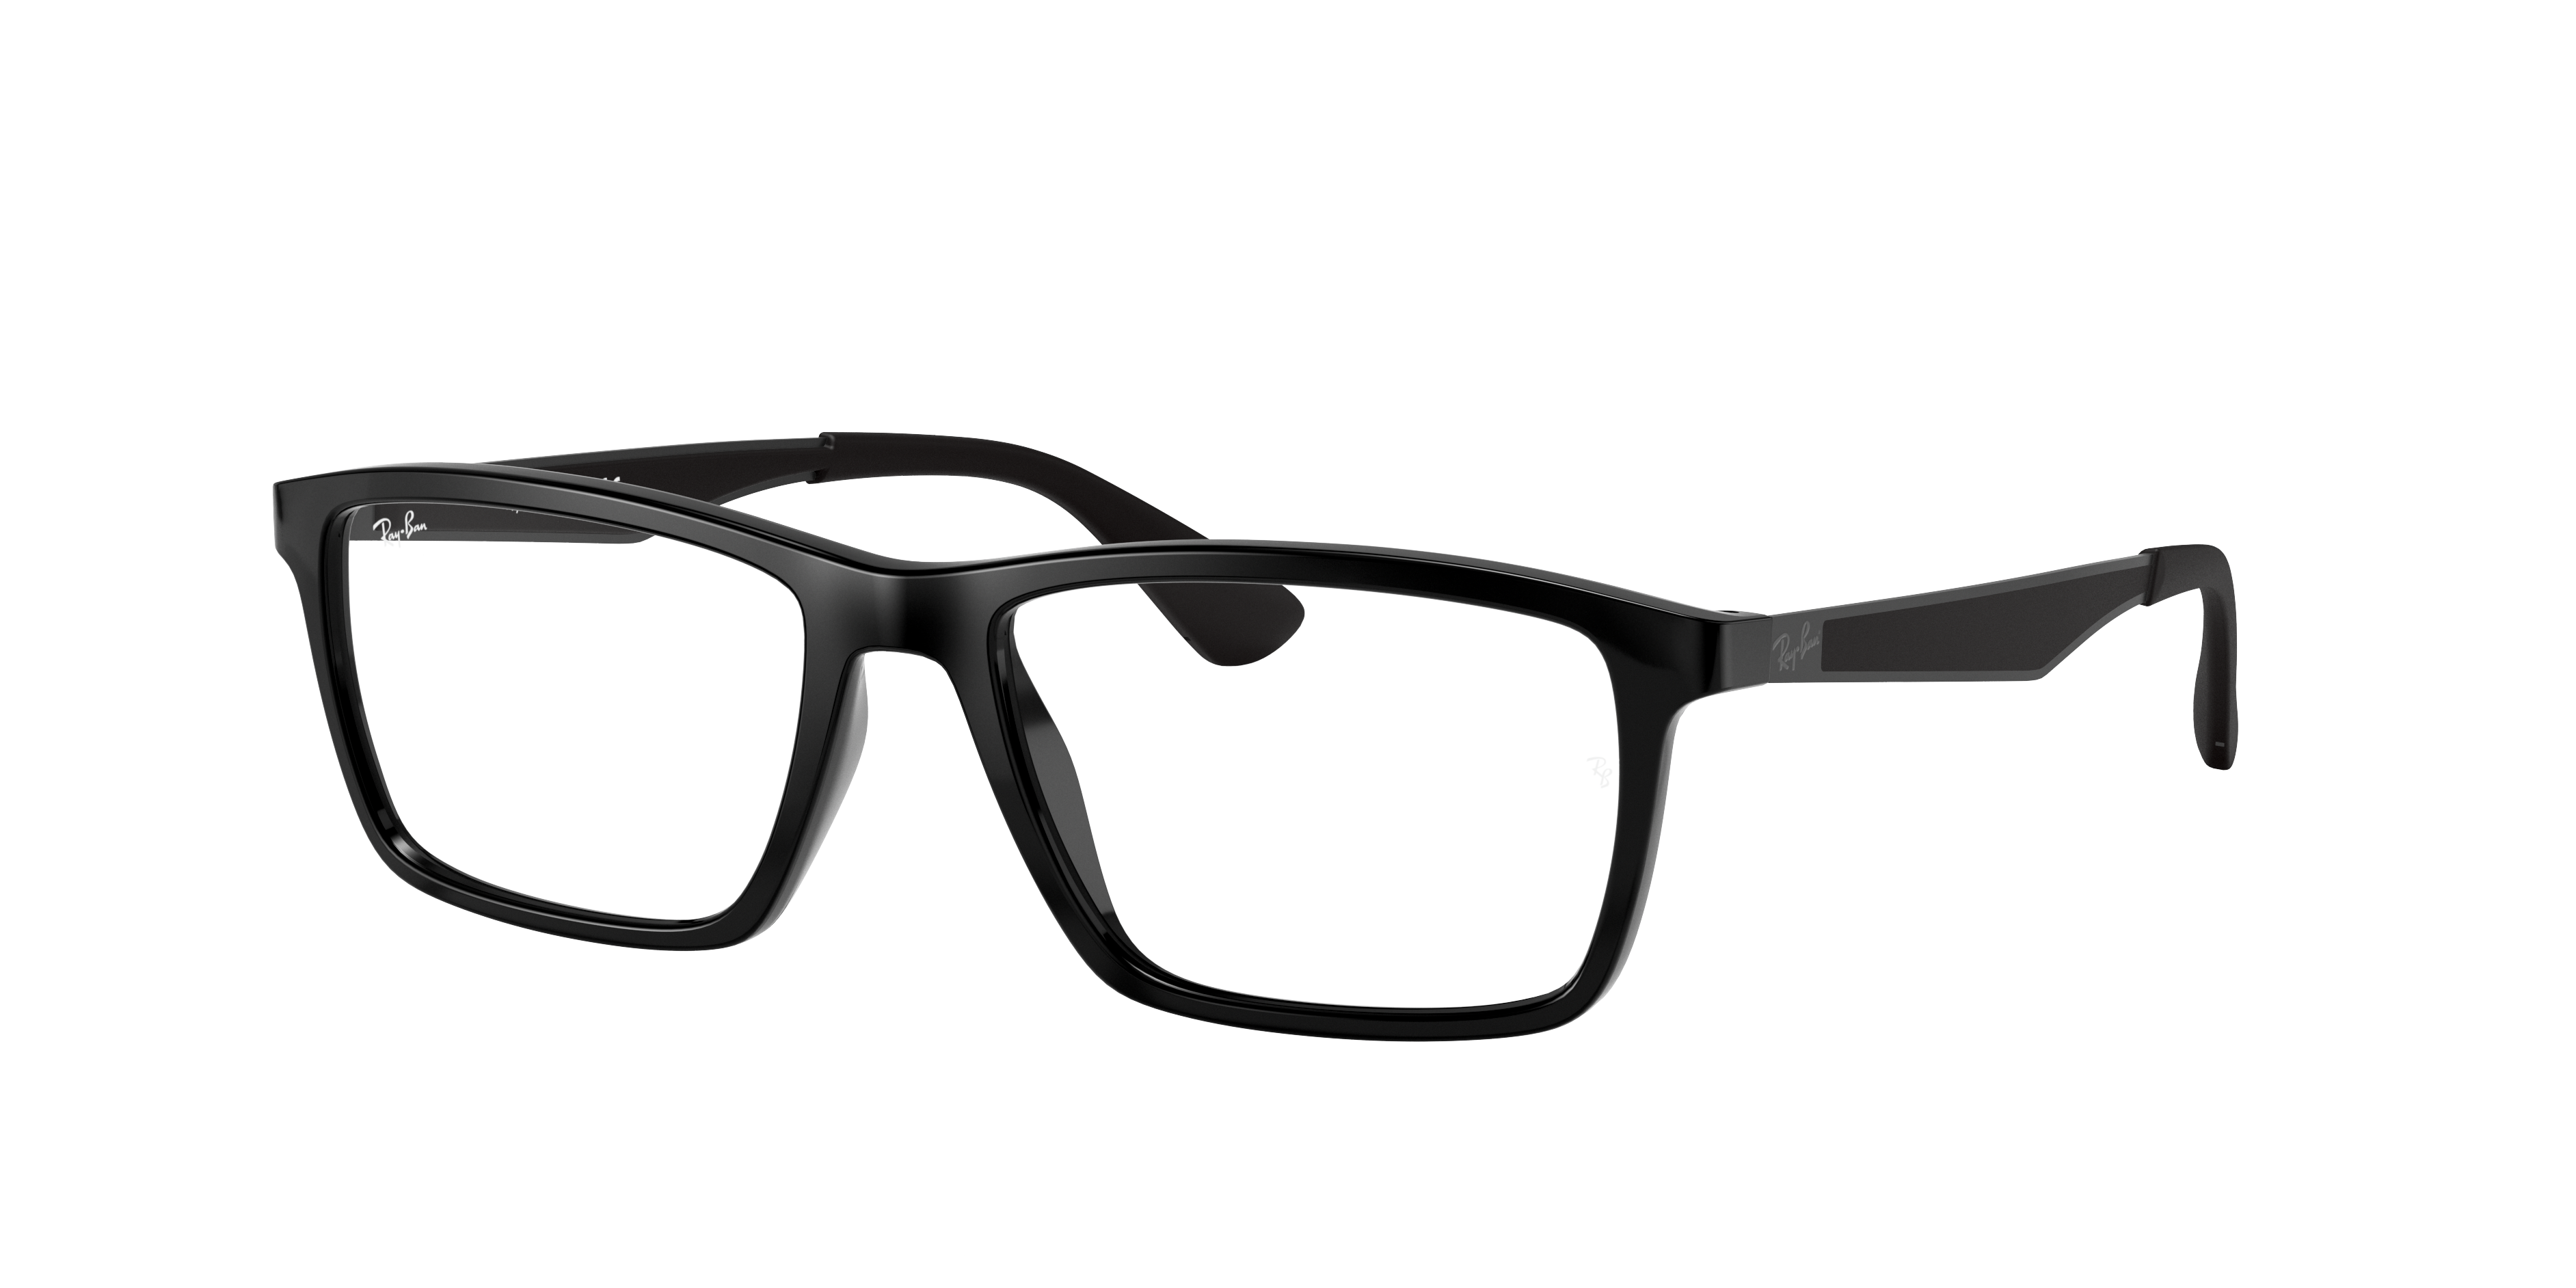 Ray-Ban RB7056 Black Eyeglasses | Glasses.com® | Free Shipping